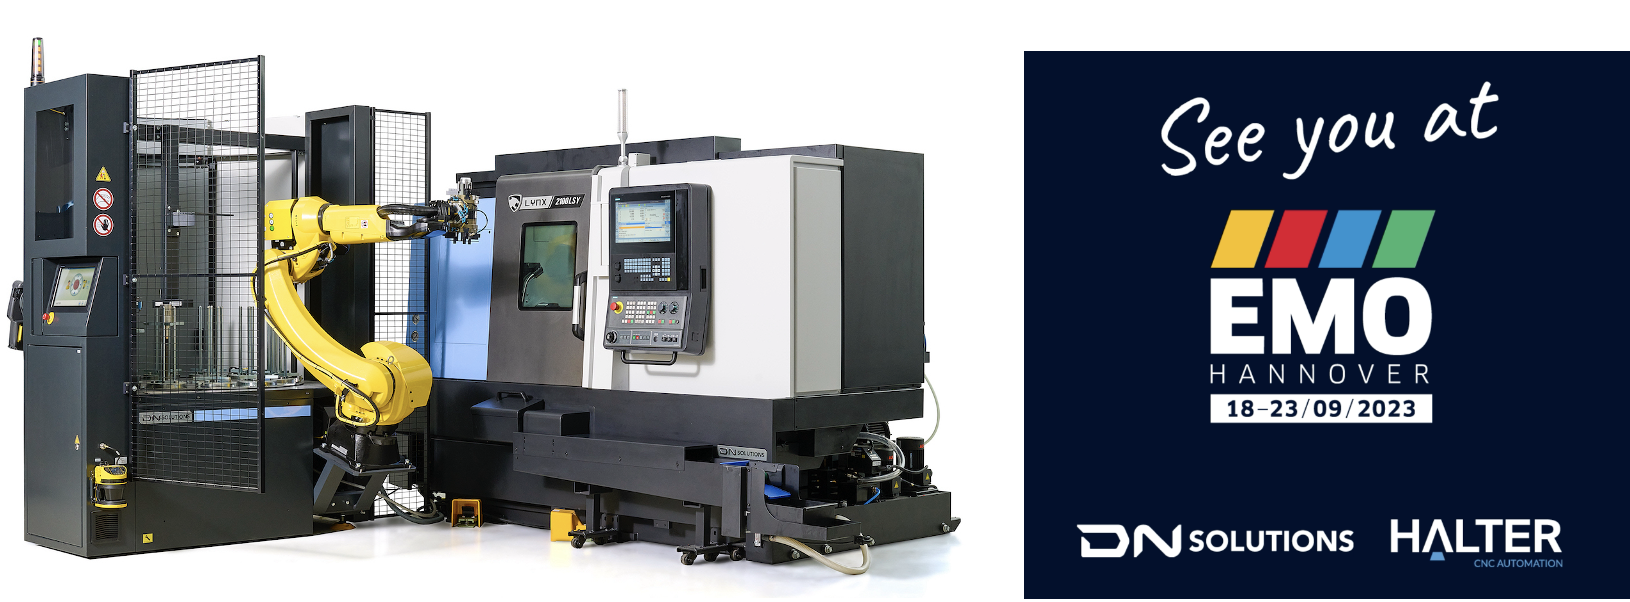 Halter TS35-DN Solutions Lynx 2100 LSY-EMO 2023